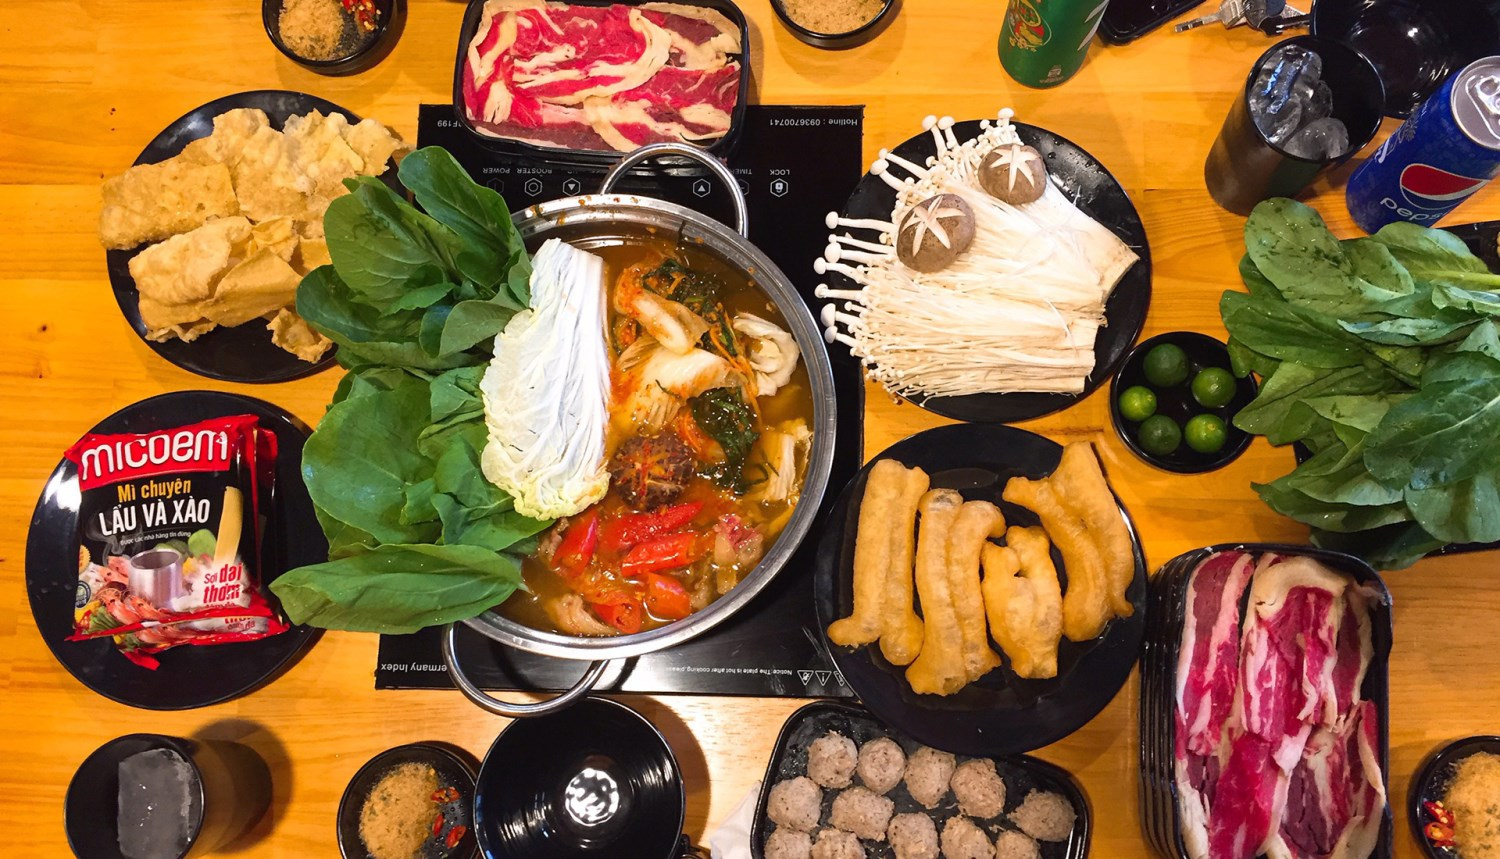 Phan - Lẩu Các Món - Triều Khúc ở Quận Thanh Xuân, Hà Nội | Foody.vn